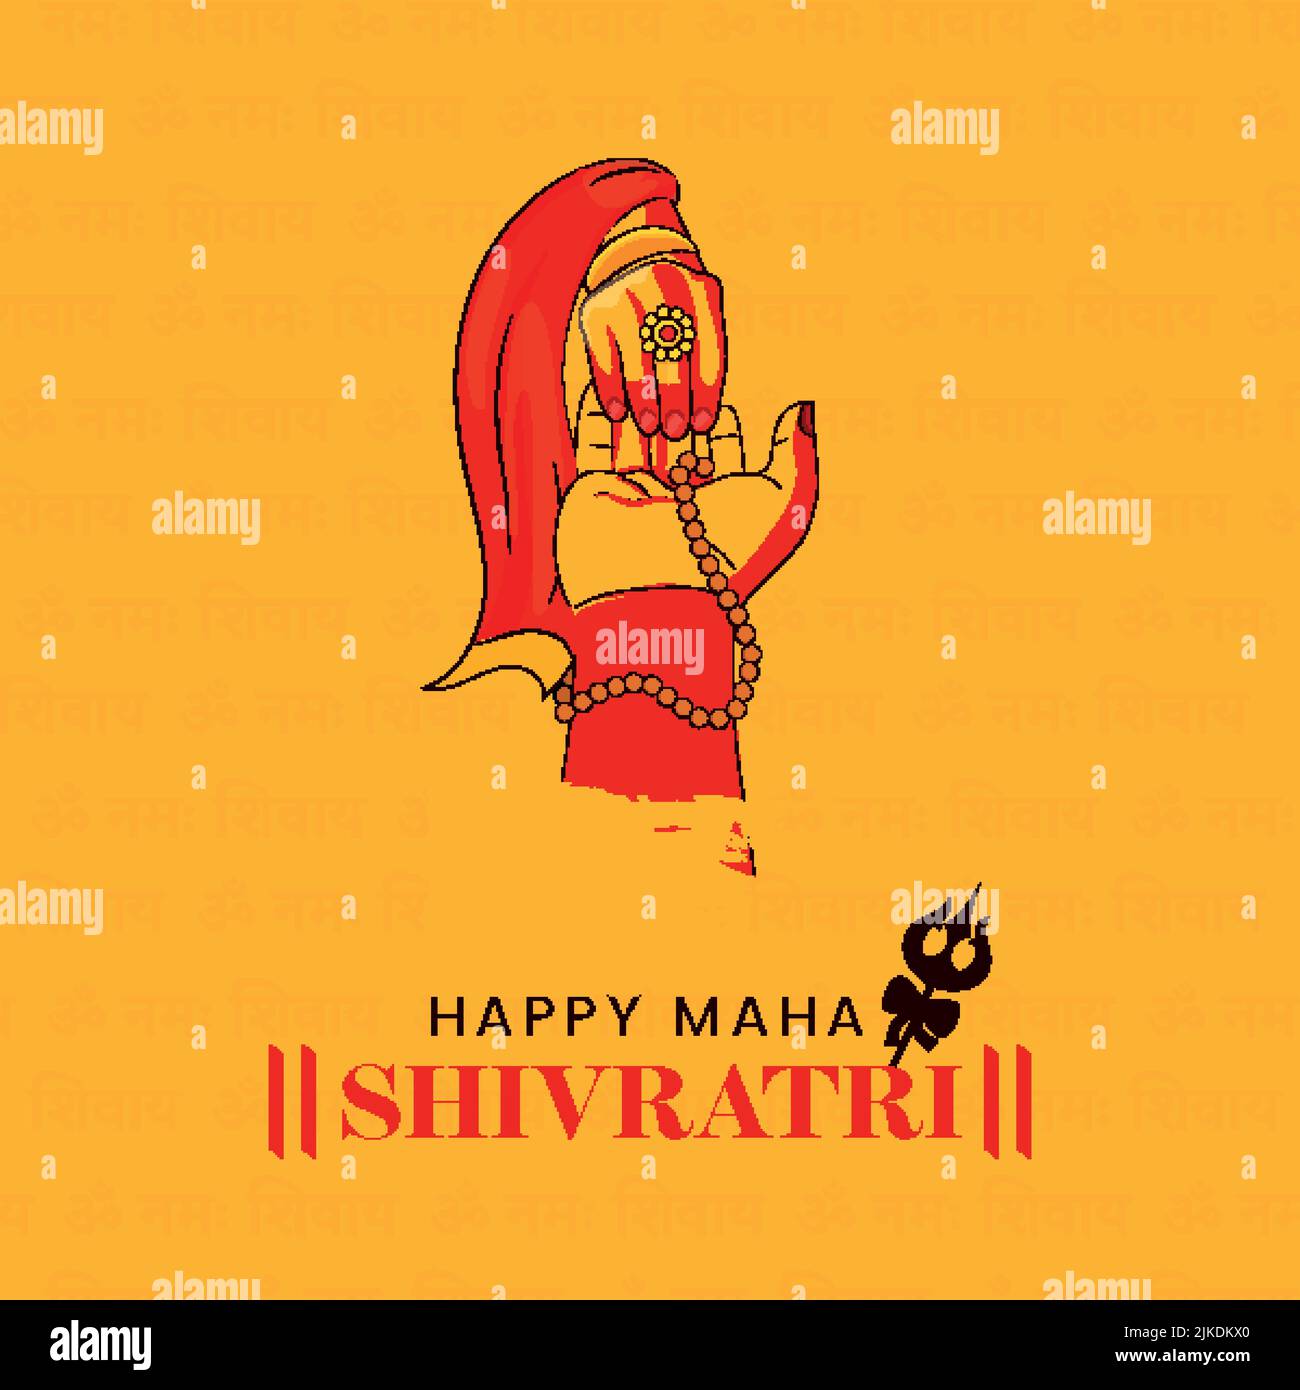 Happy Maha Shivratri Font Mit Lord Shiva Und Göttin Parvati Hände Zusammen Gegen Orange Hintergrund. Stock Vektor